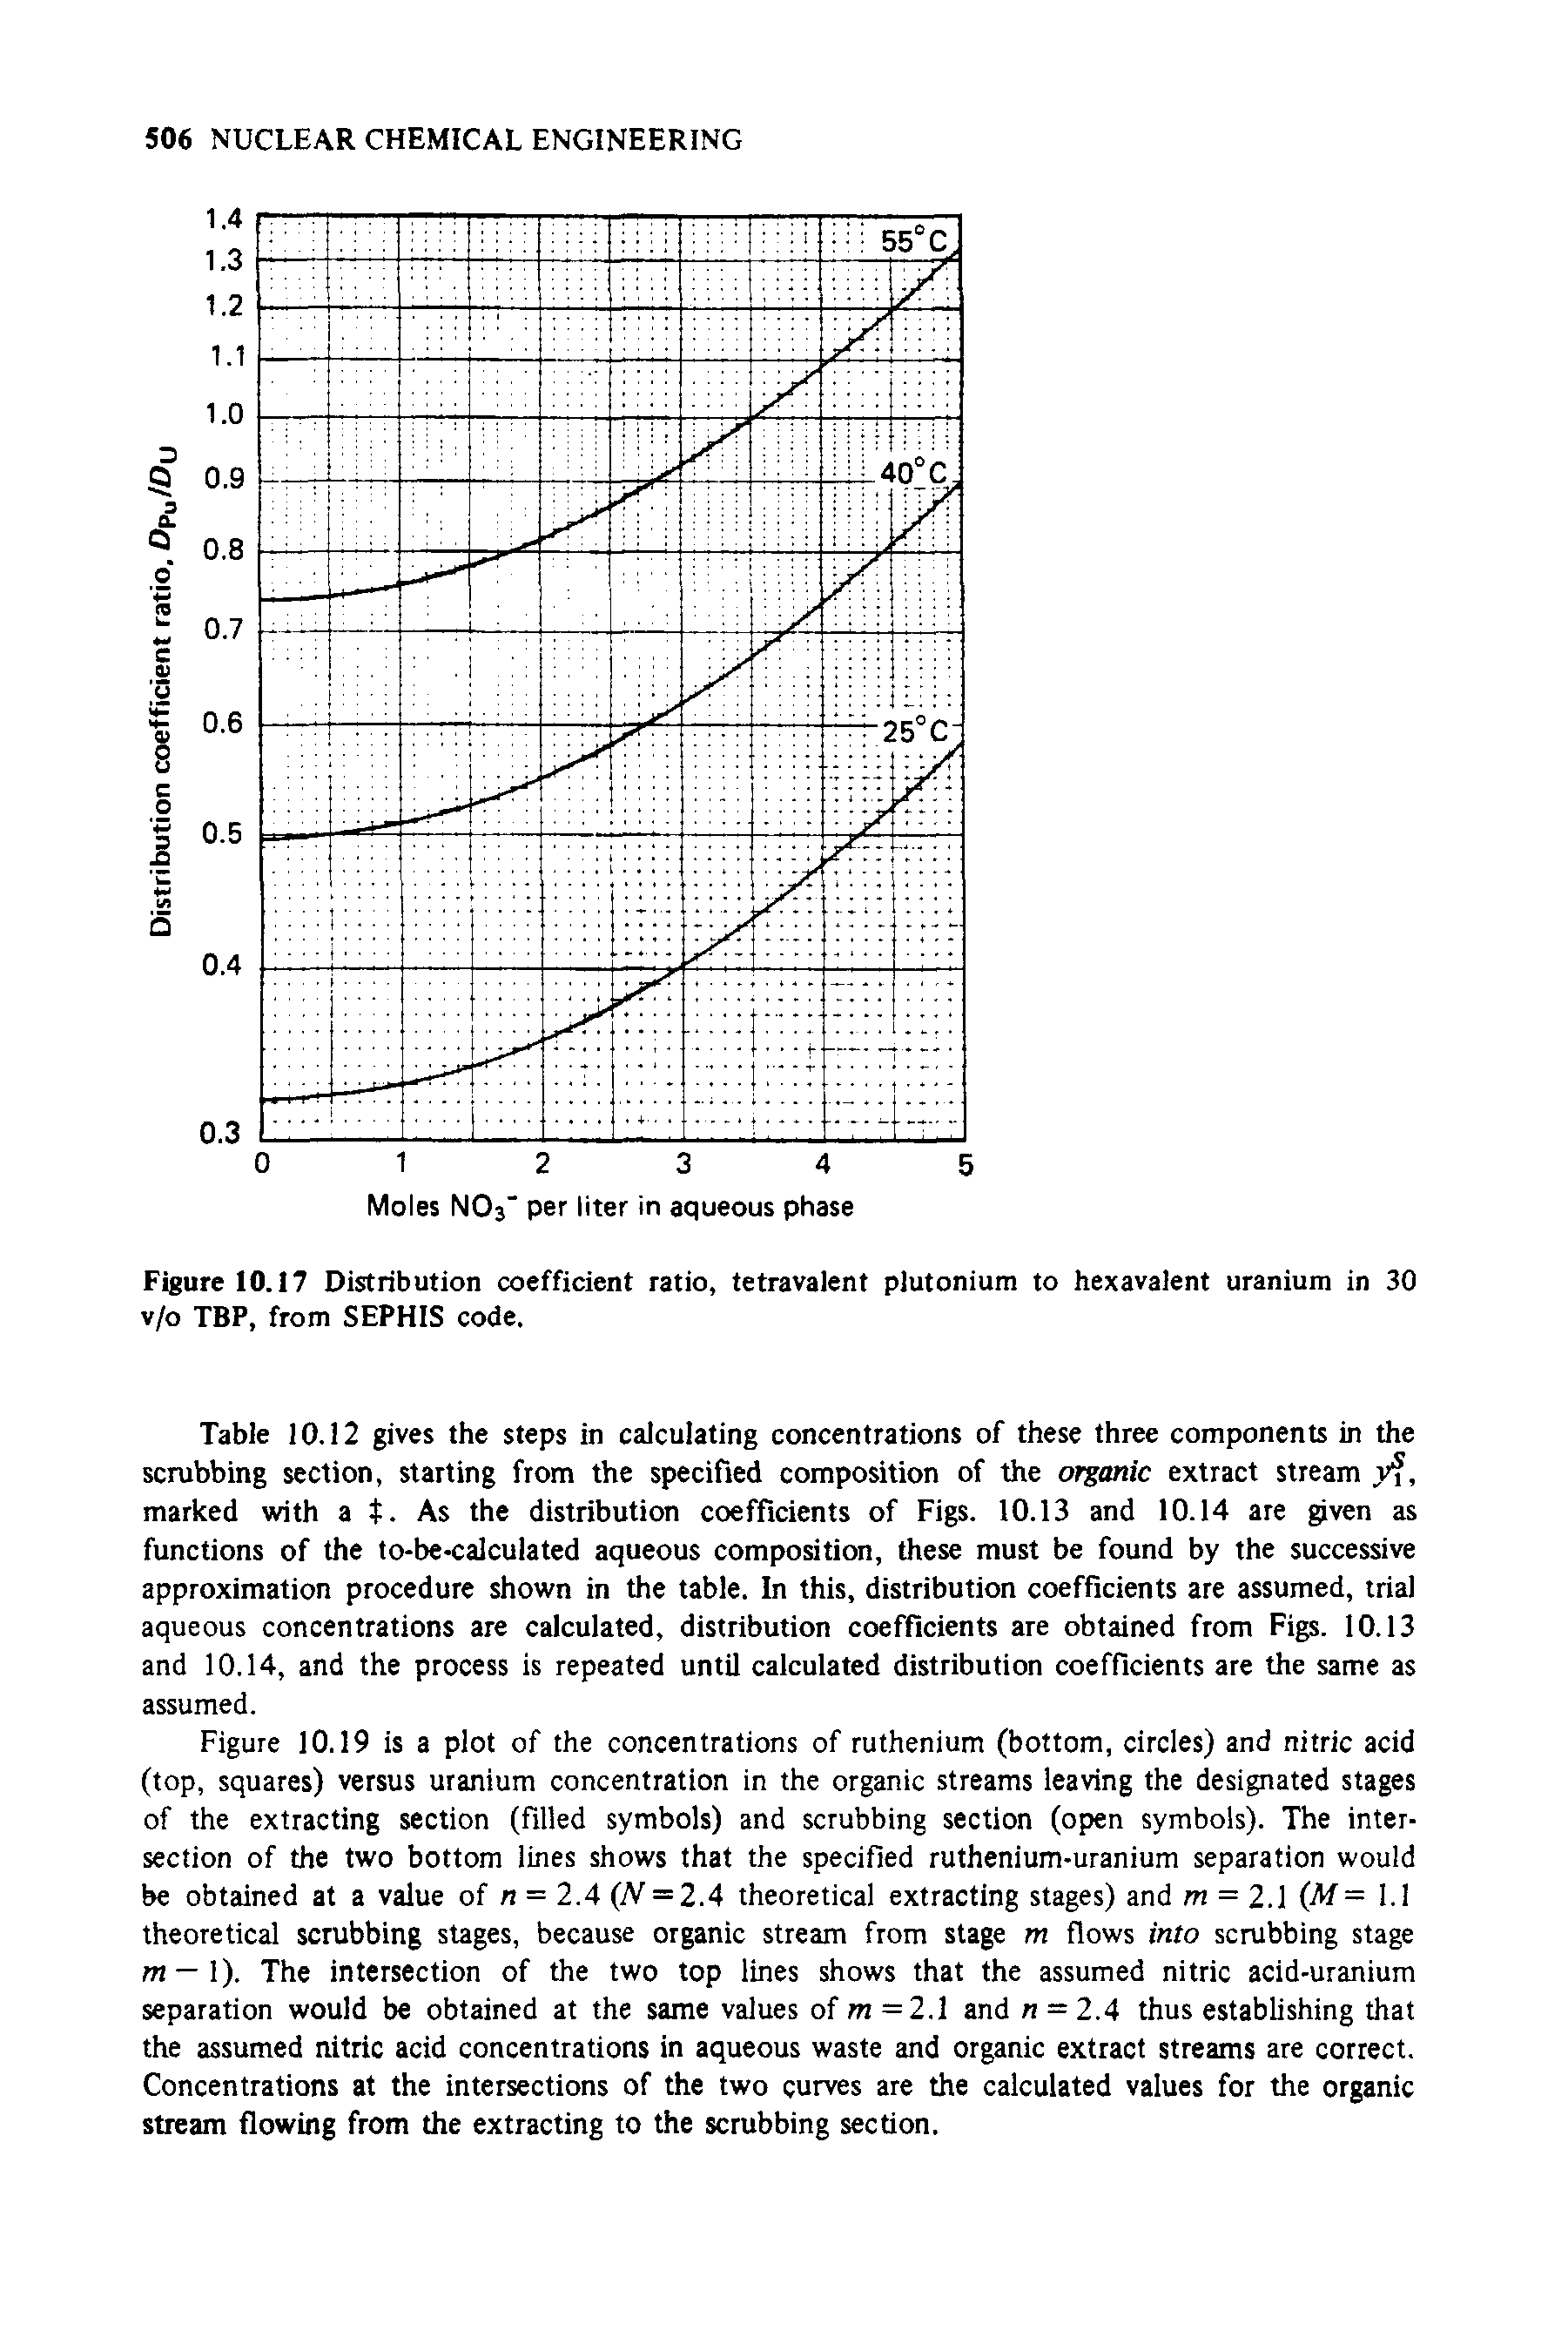 Figure 10.17 Distribution coefficient ratio, tetravalent plutonium to hexavalent uranium in 30 v/o TBP, from SEPHIS code.